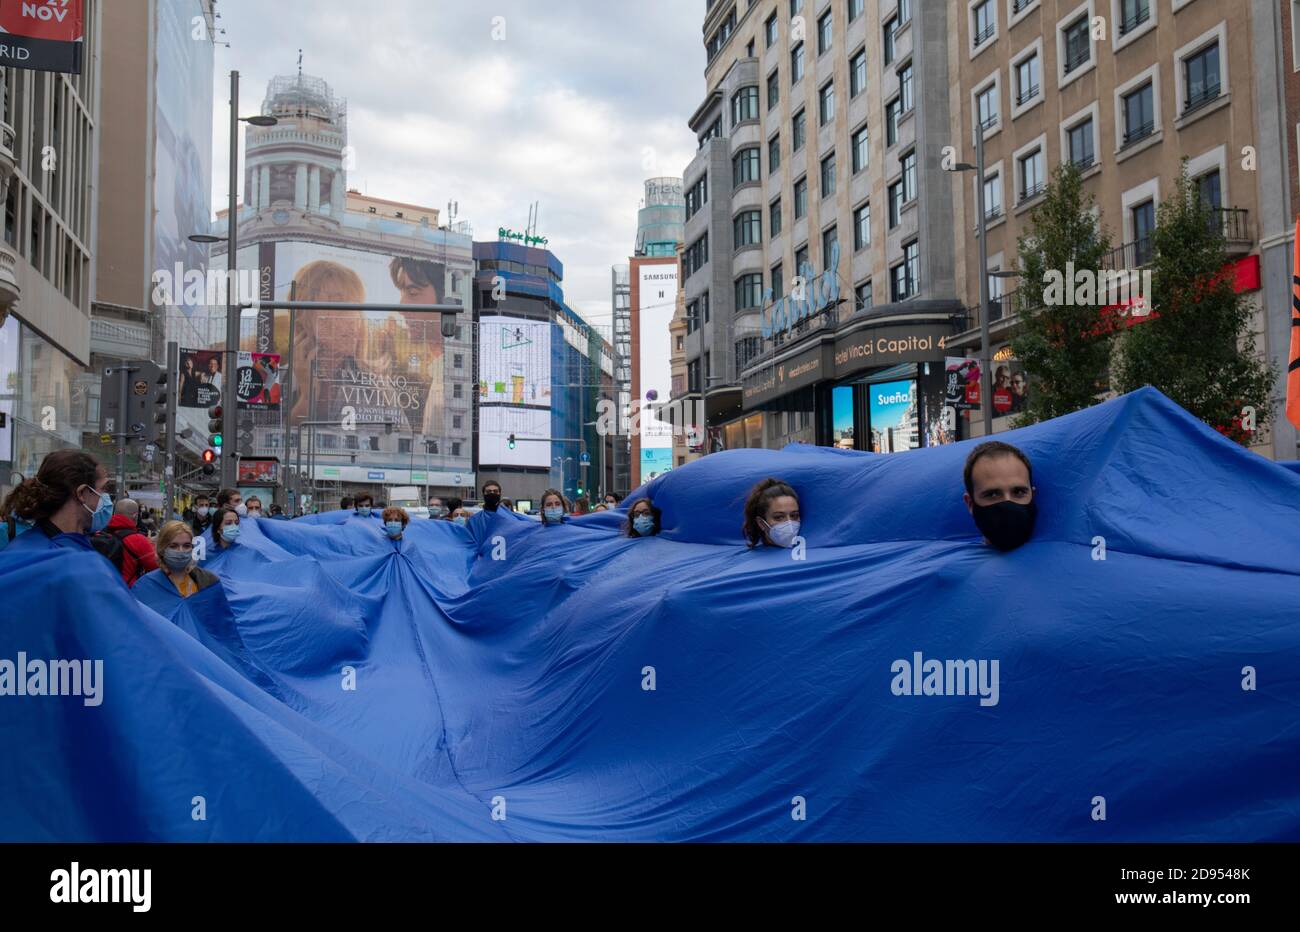 Los activistas son vistos dentro de la tela azul mientras marchaban en la  calle durante la manifestación.durante la tercera rebelión internacional,  el movimiento de extinción Rebelión bloqueó la calle Gran vía en